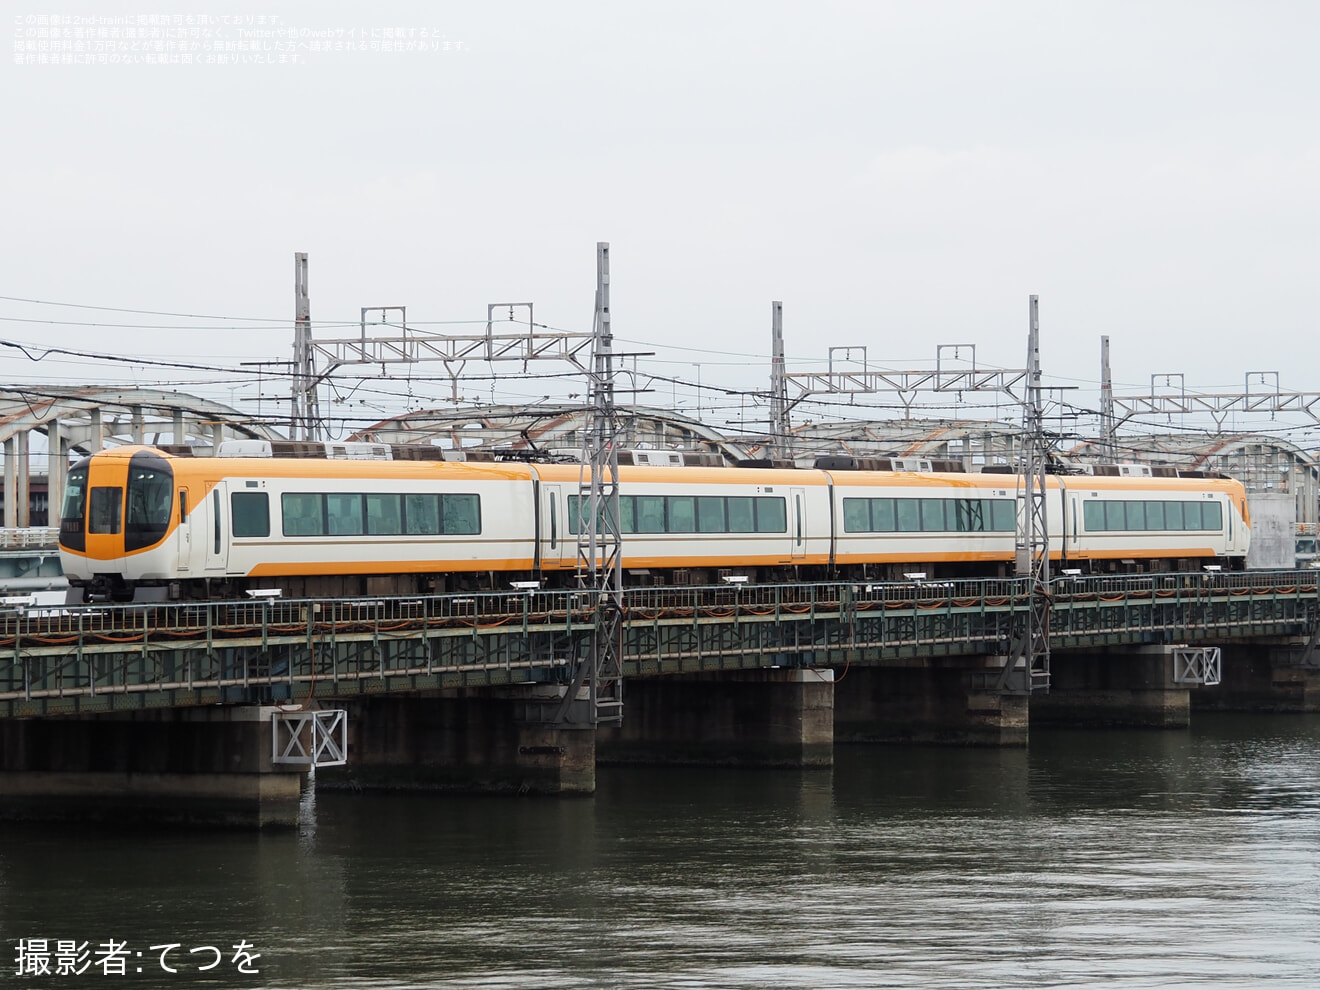 【近鉄】「近鉄特急で行く!阪神・近鉄車庫巡りツアー」を催行の拡大写真